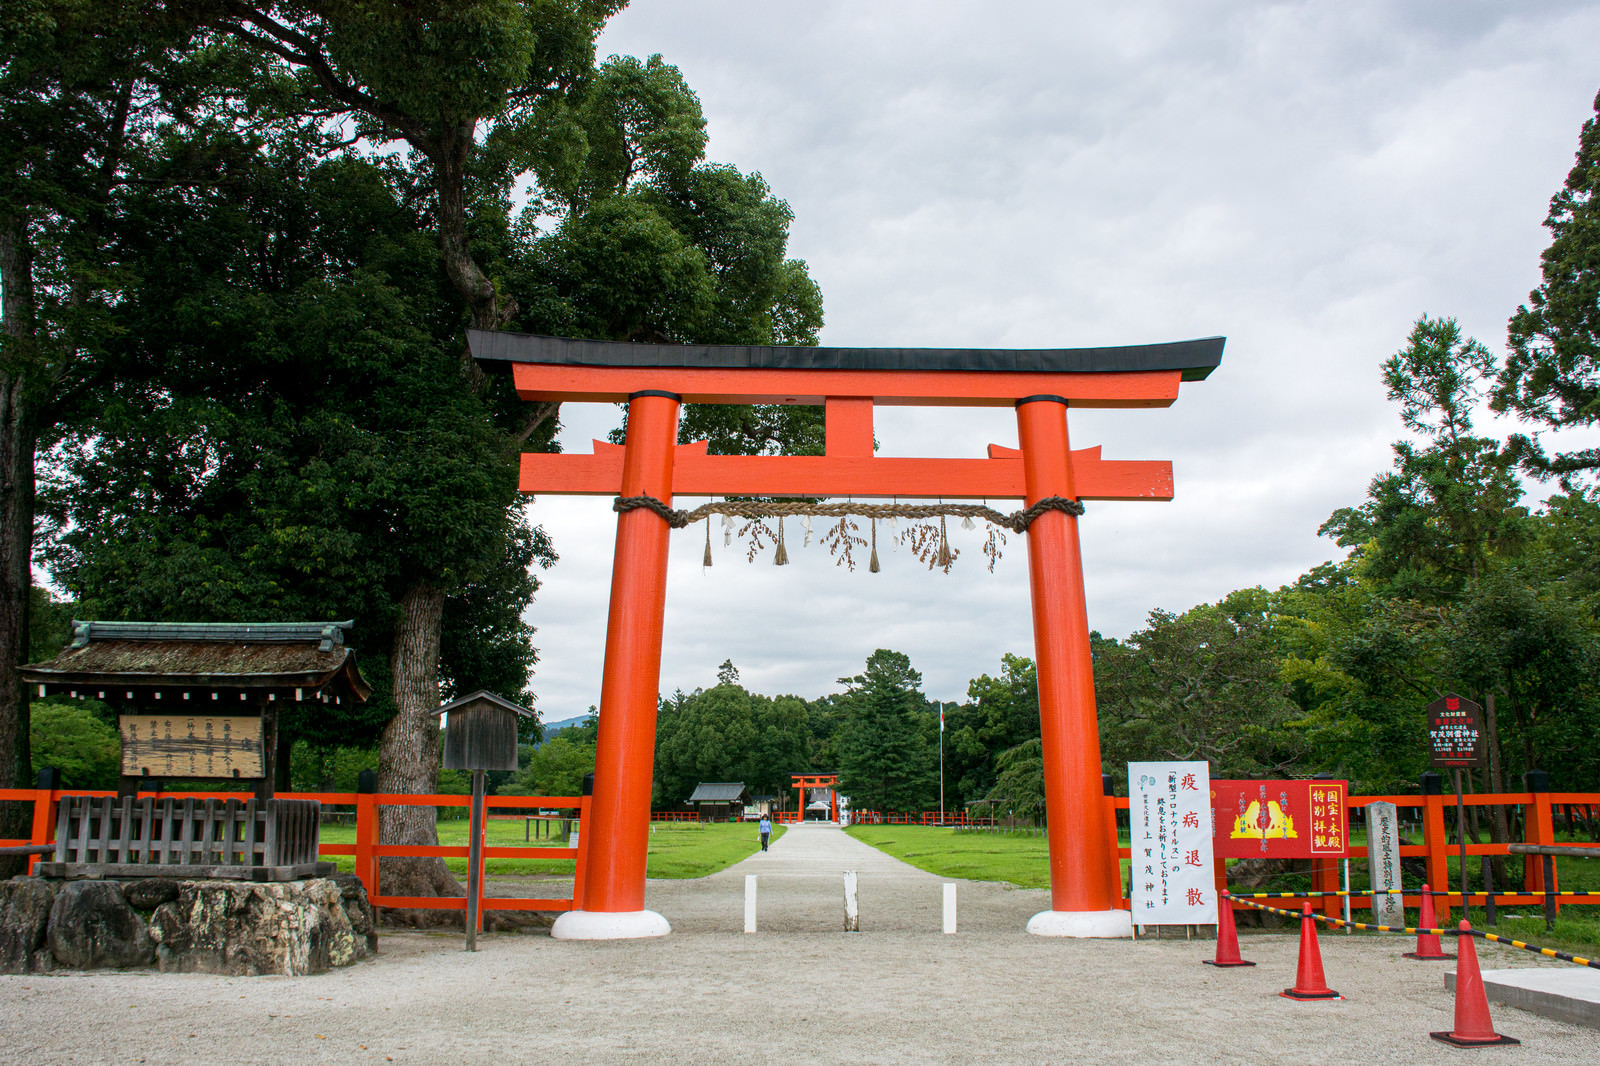 美しい大きな朱塗りの鳥居が入り口に建つ上賀茂神社 かみがもじんじゃ の写真を無料ダウンロード フリー素材 ぱくたそ